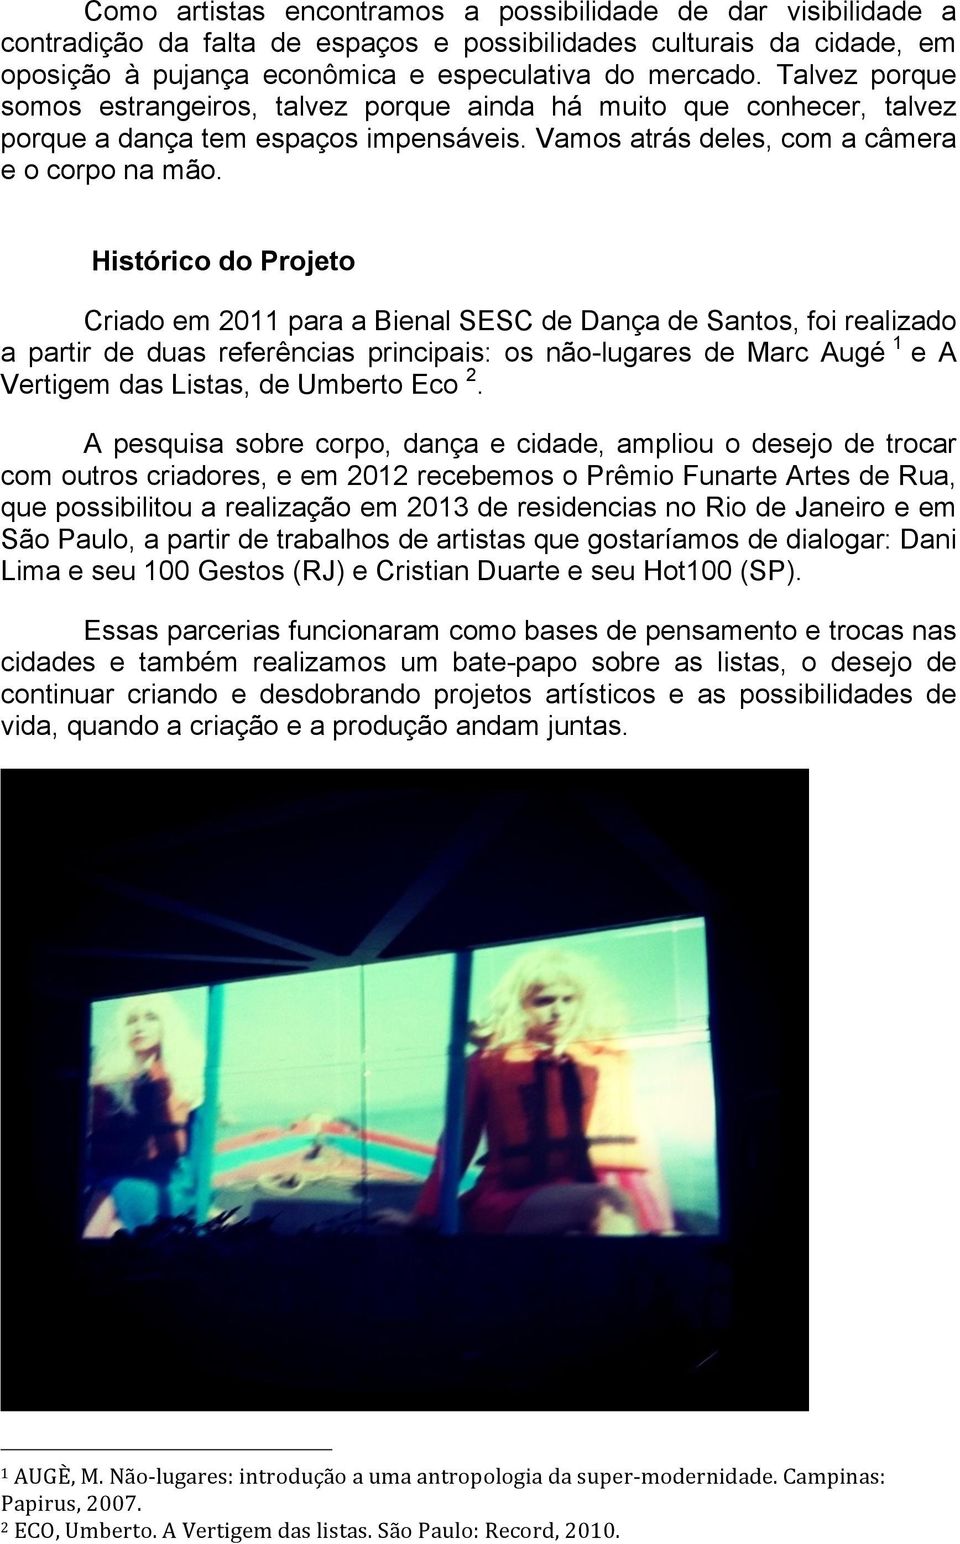 Histórico do Projeto Criado em 2011 para a Bienal SESC de Dança de Santos, foi realizado a partir de duas referências principais: os não-lugares de Marc Augé 1 e A Vertigem das Listas, de Umberto Eco